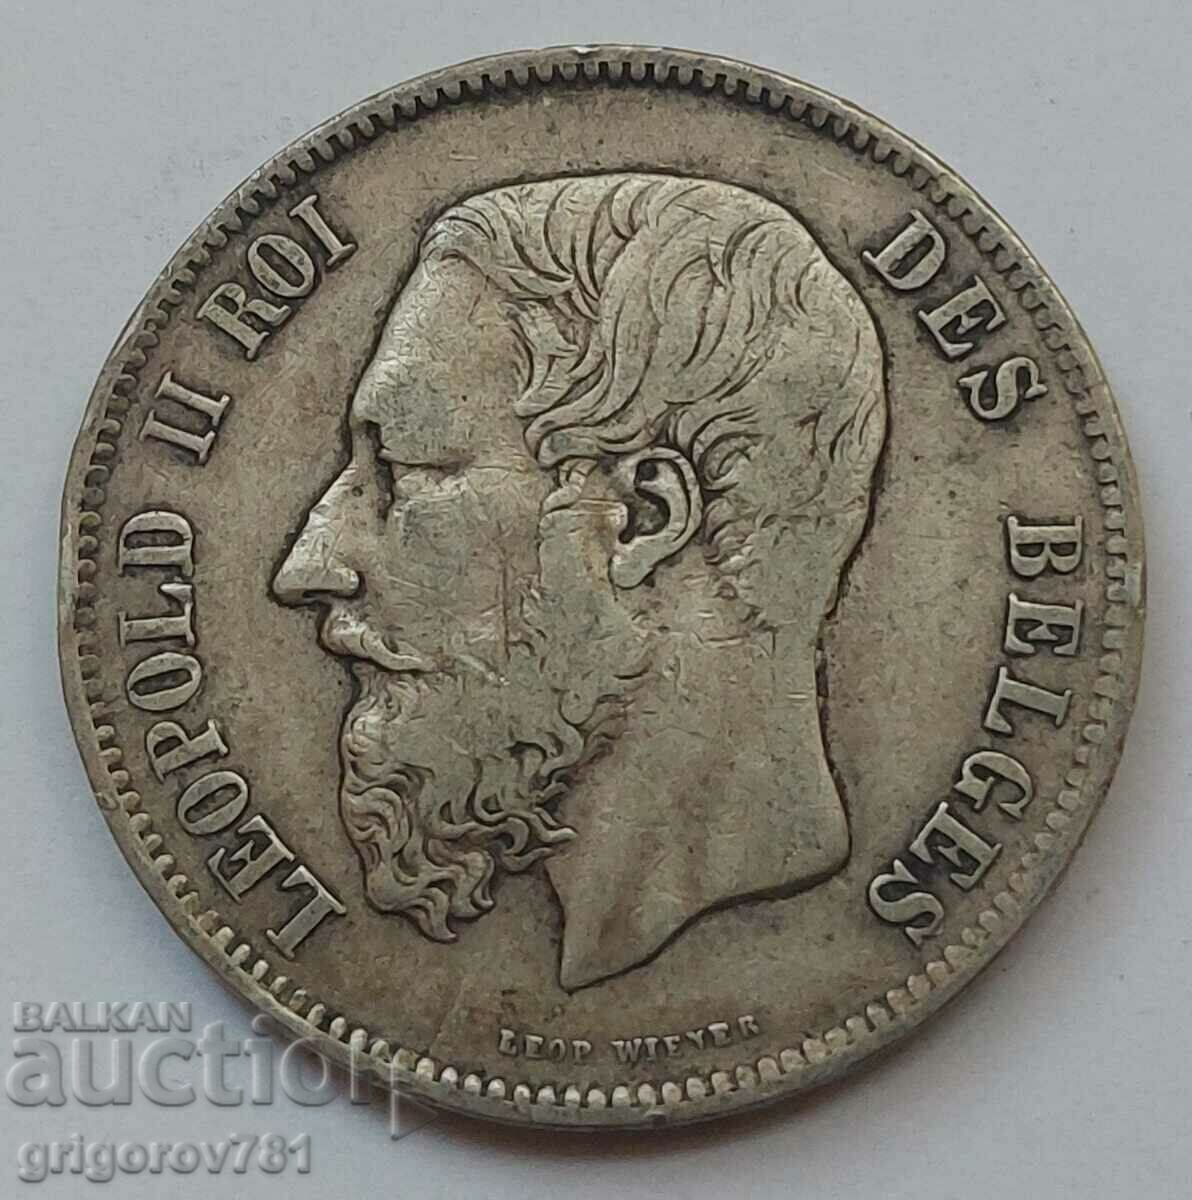 5 Francs Silver Belgium 1869 Silver Coin #166